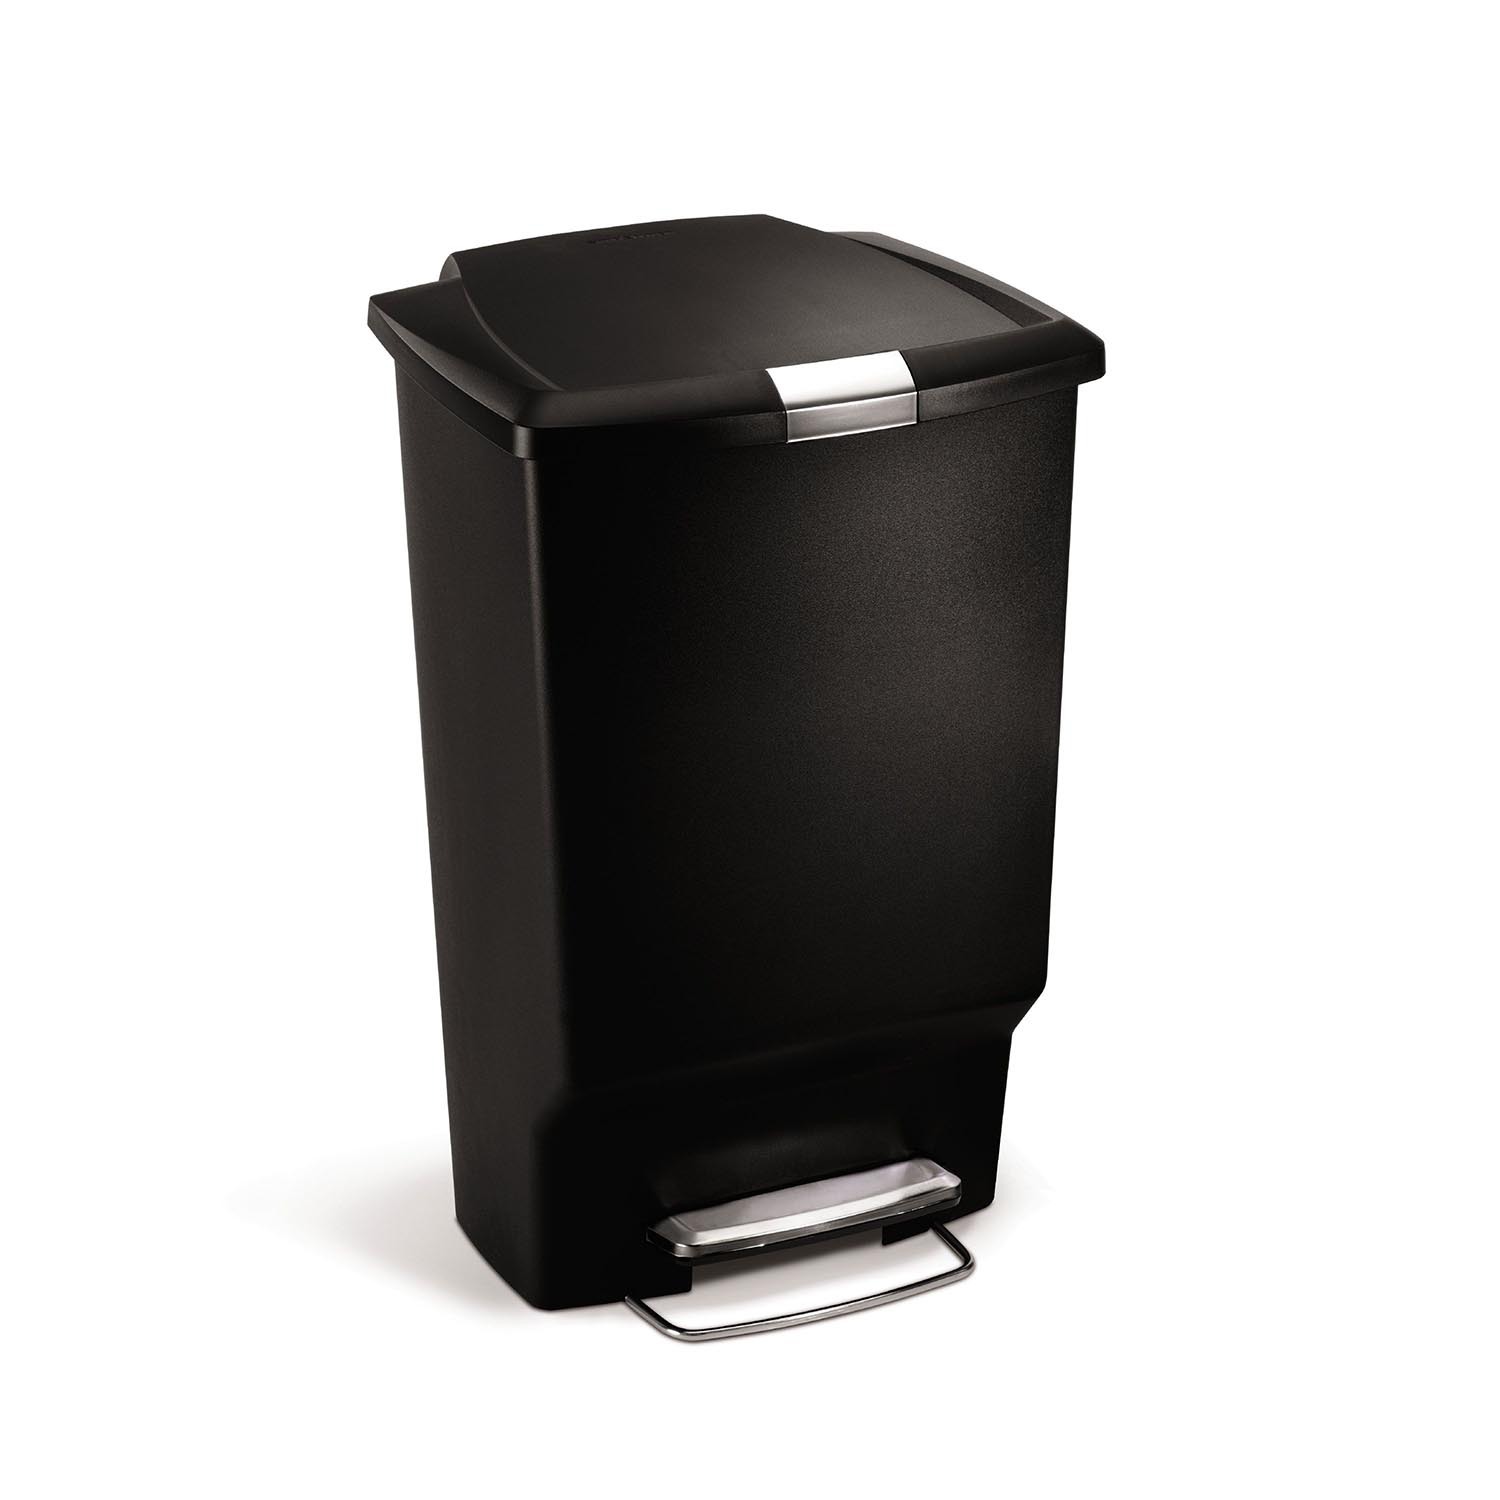 simplehuman 45L rectangular pedal bin black plastic - Black Image